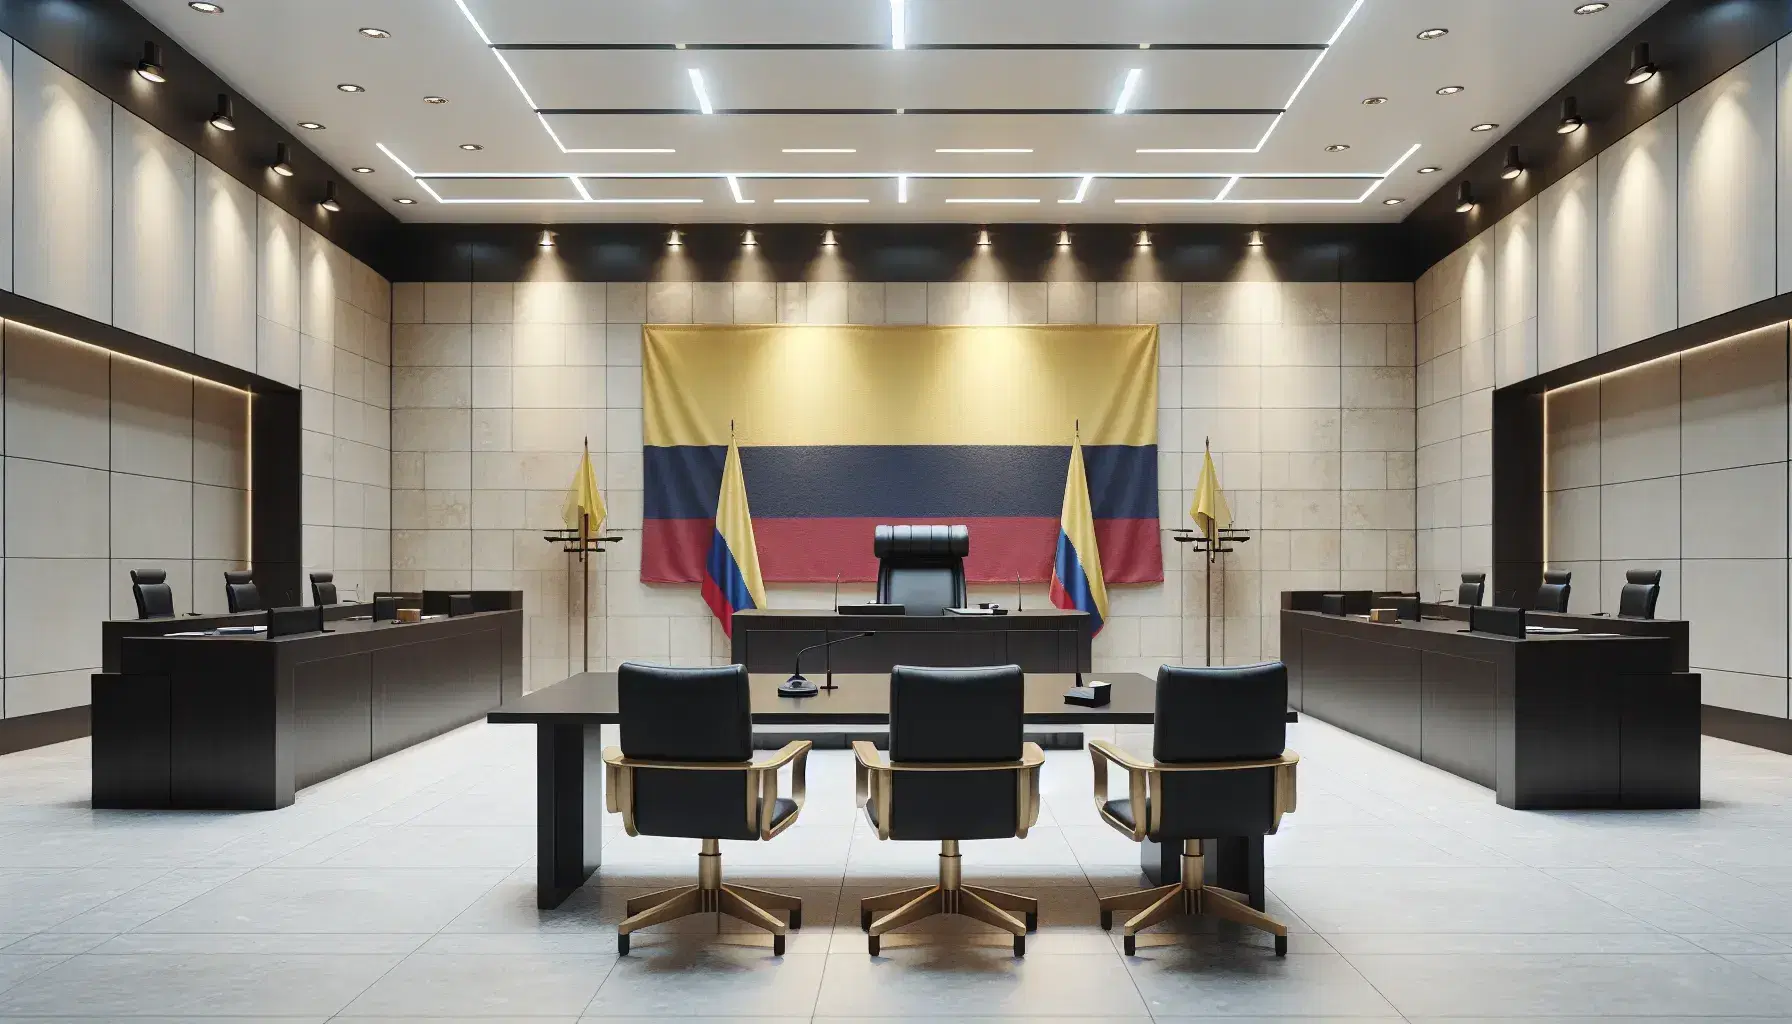 Sala de audiencias vacía con mesa central para juez, estrado con atril para testigos, mesas para abogados, bandera de Colombia y decoración sobria.